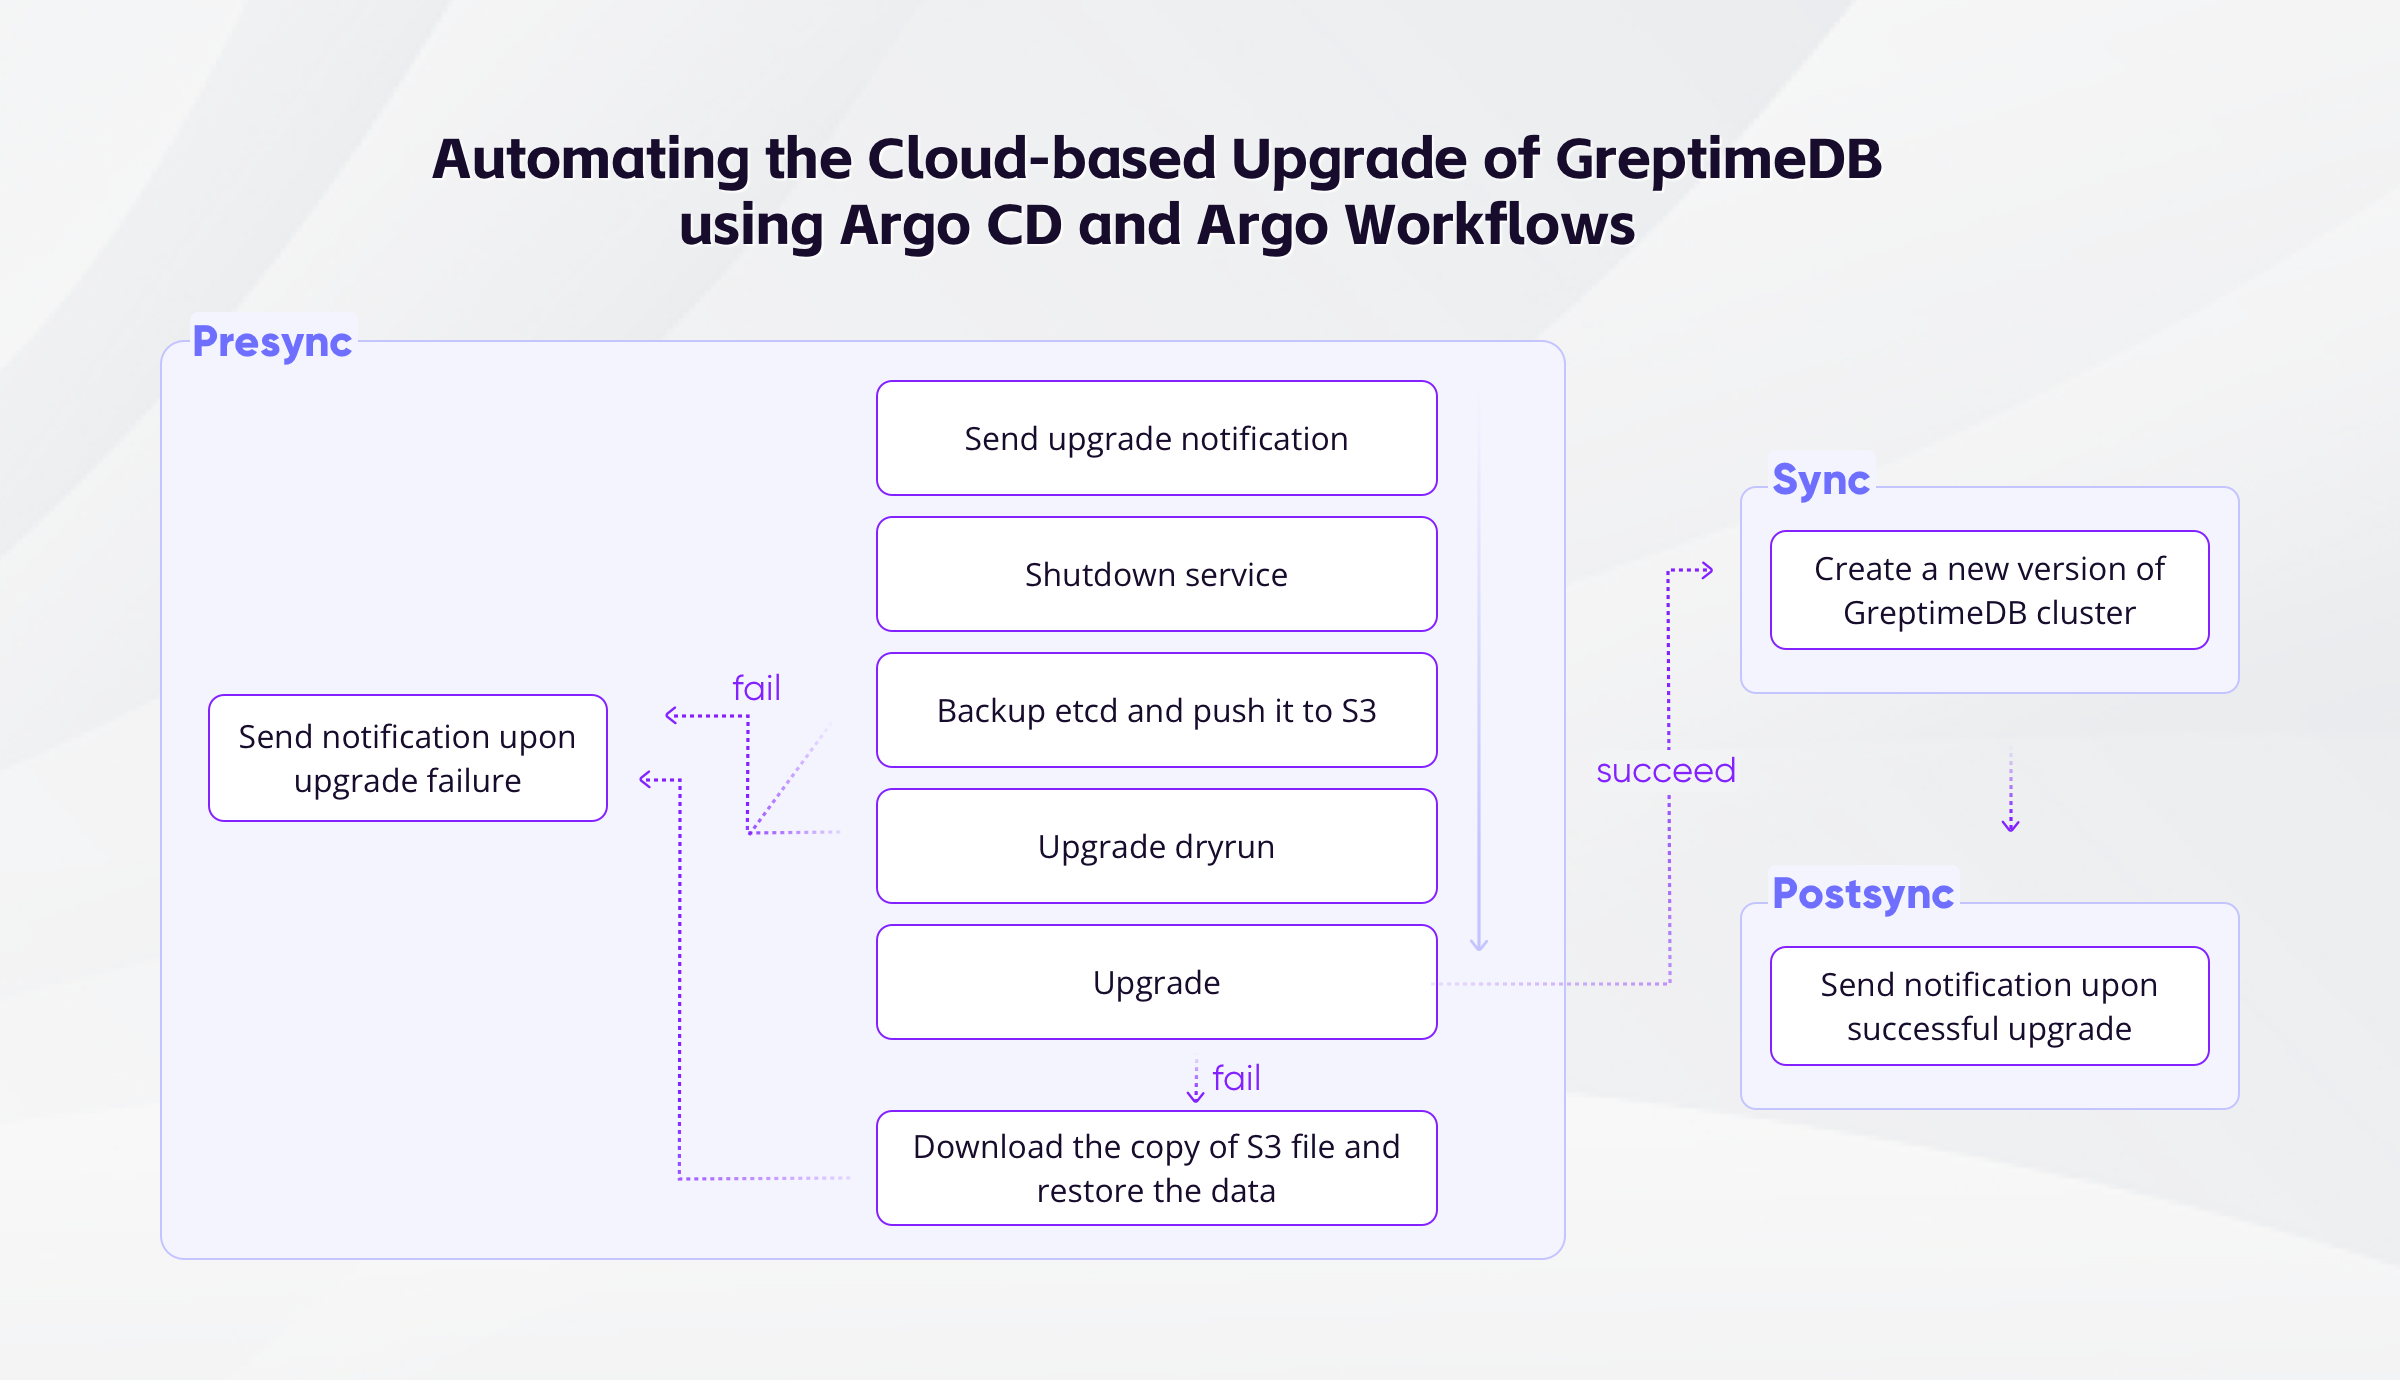 基于 Argo CD 与 Argo Workflows 的 GreptimeDB 云端自动化升级实践